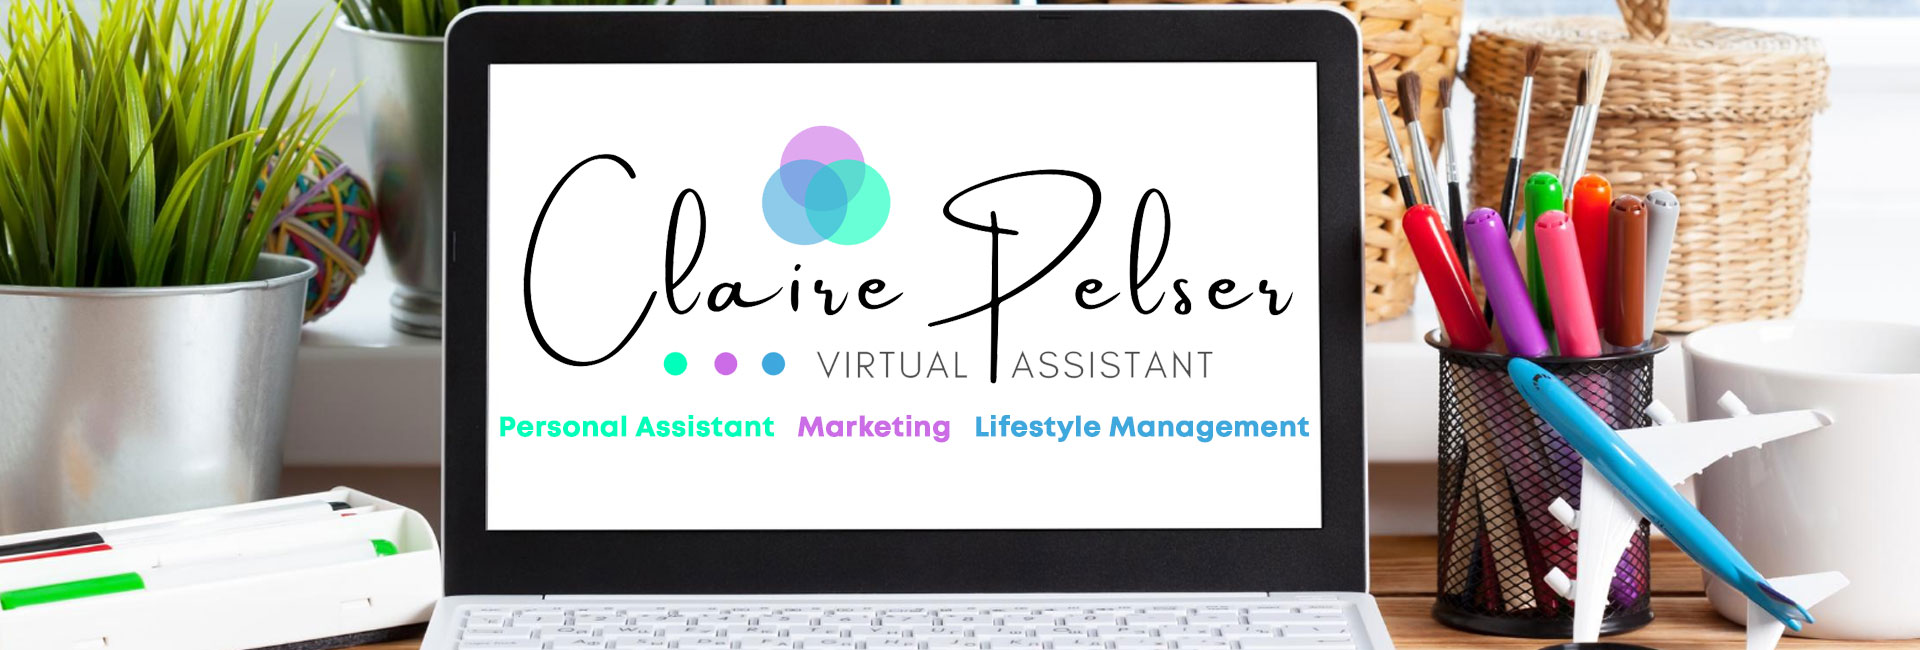 Claire Pelser Virtual Assistant